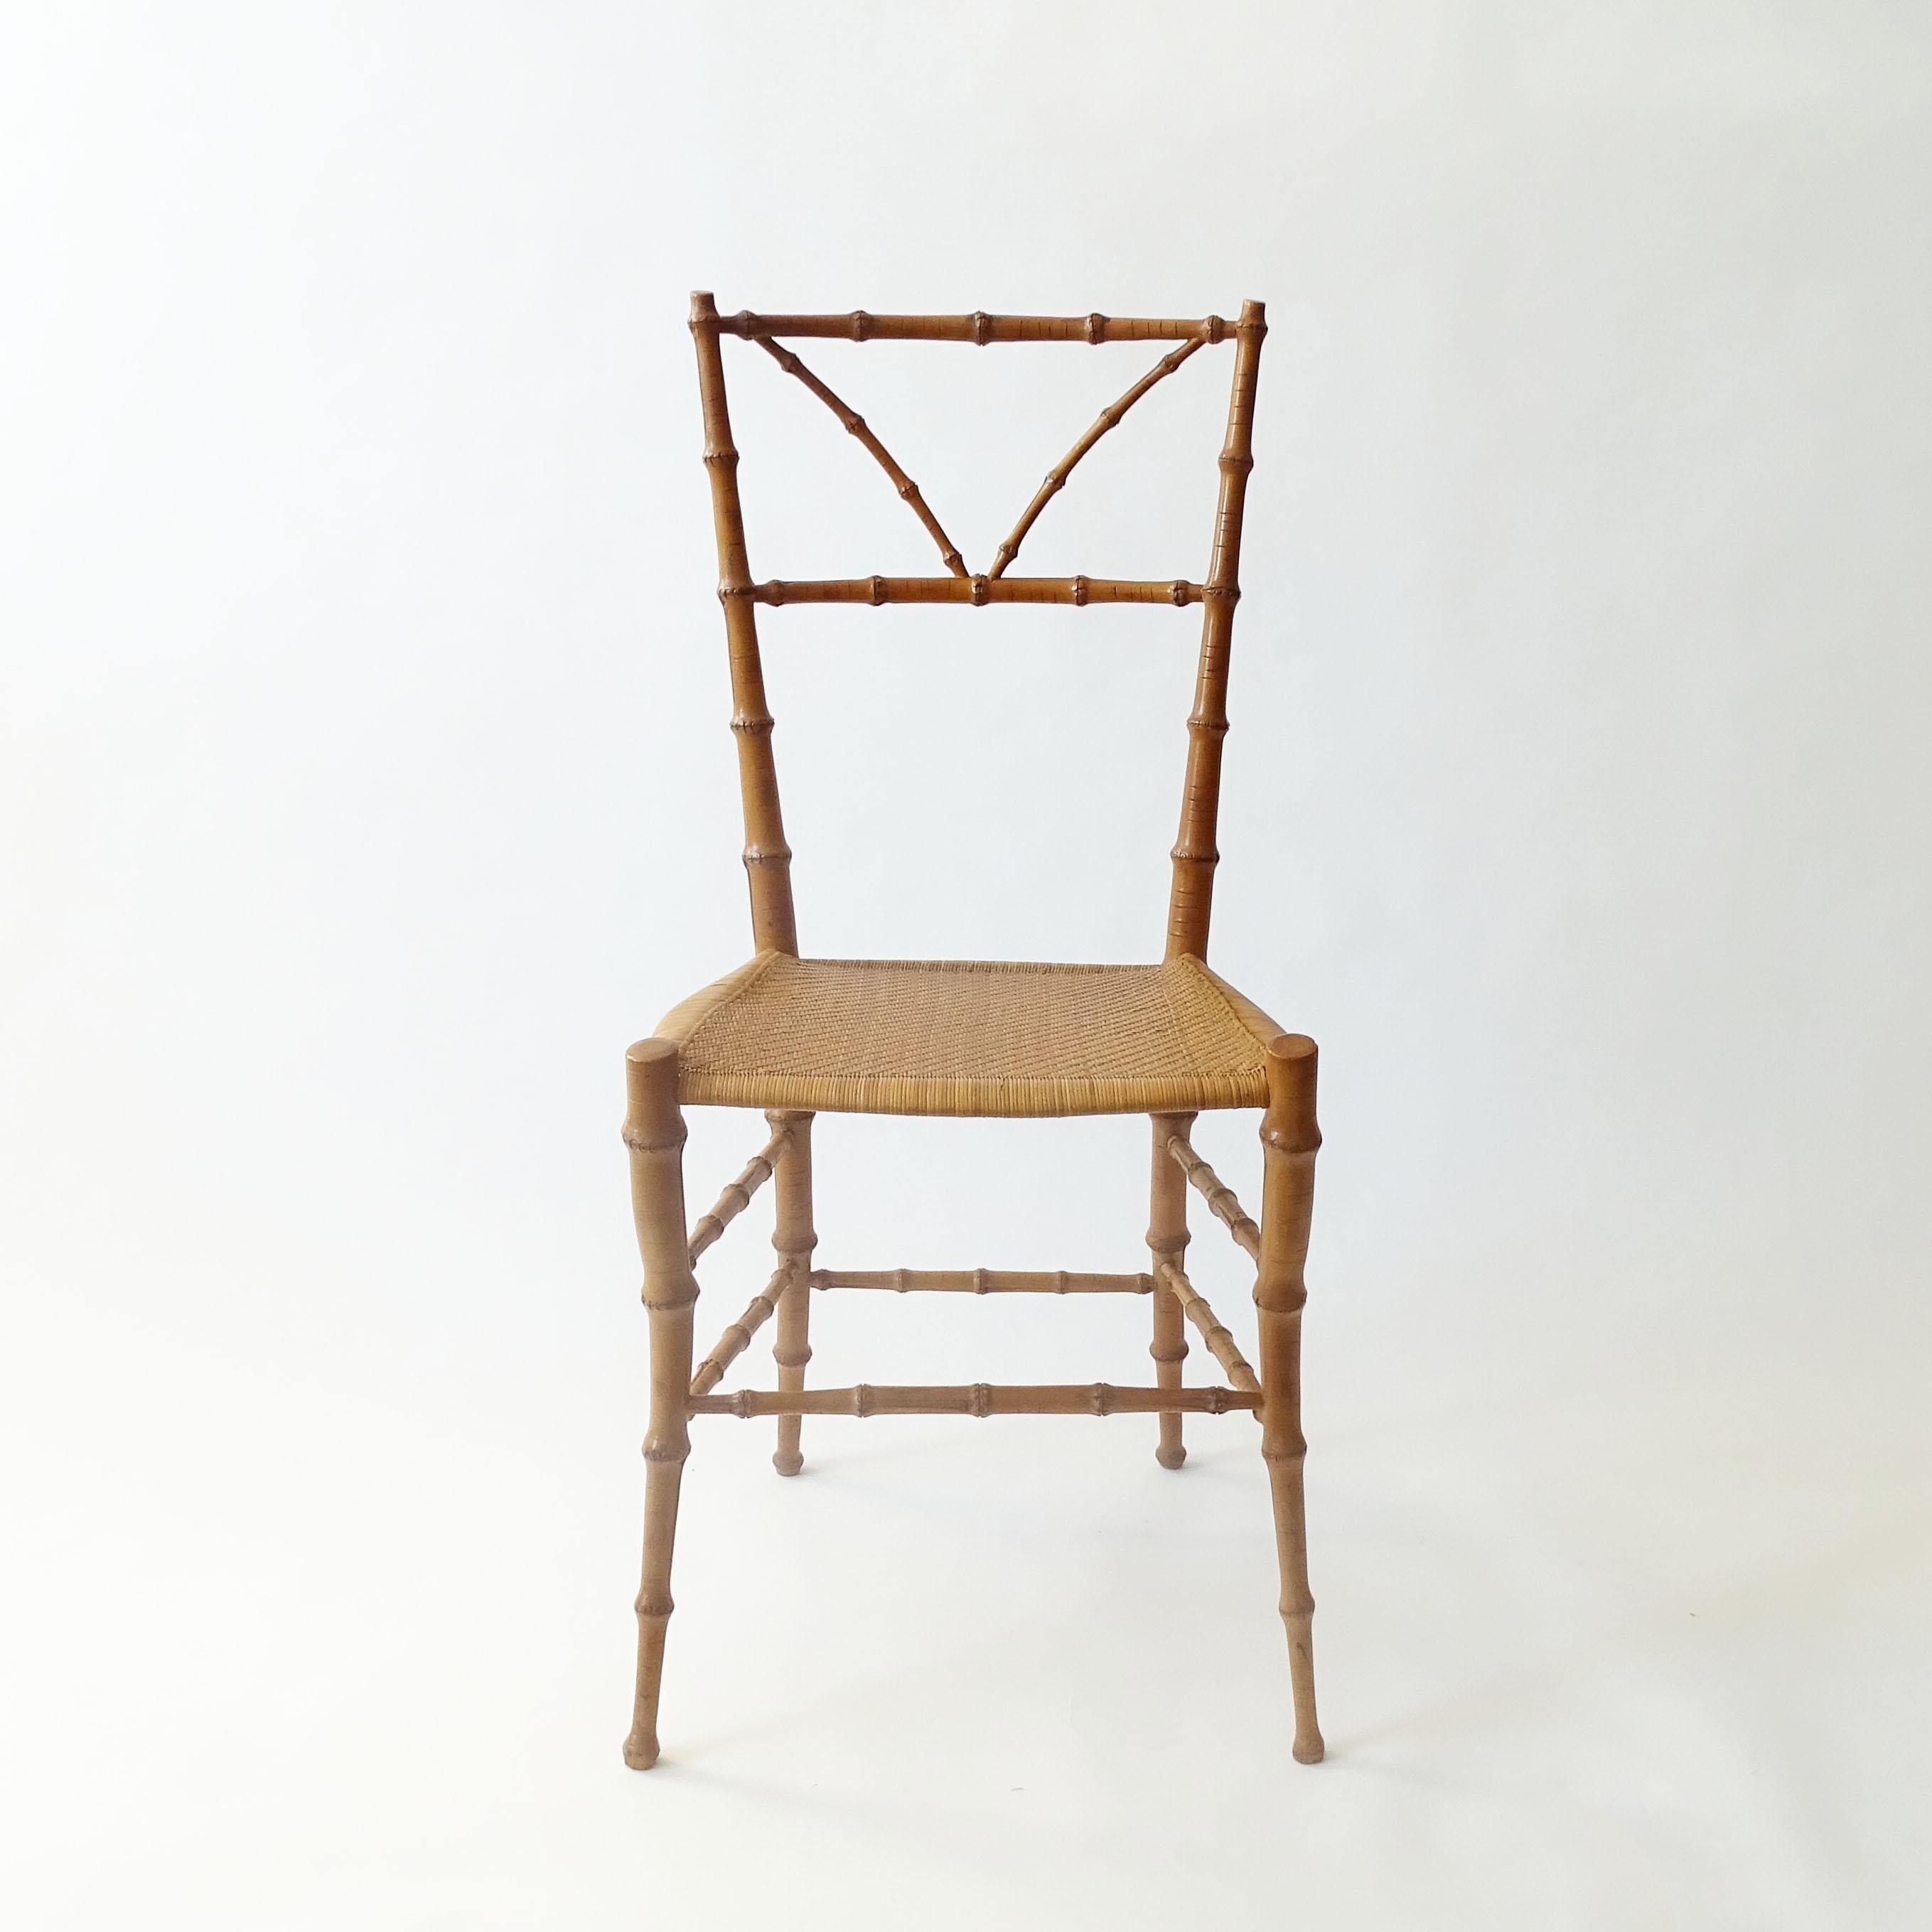 Prächtiger einzelner Stuhl aus Bambusimitat und Korbgeflecht Chiavarina, Italien 1950er Jahre